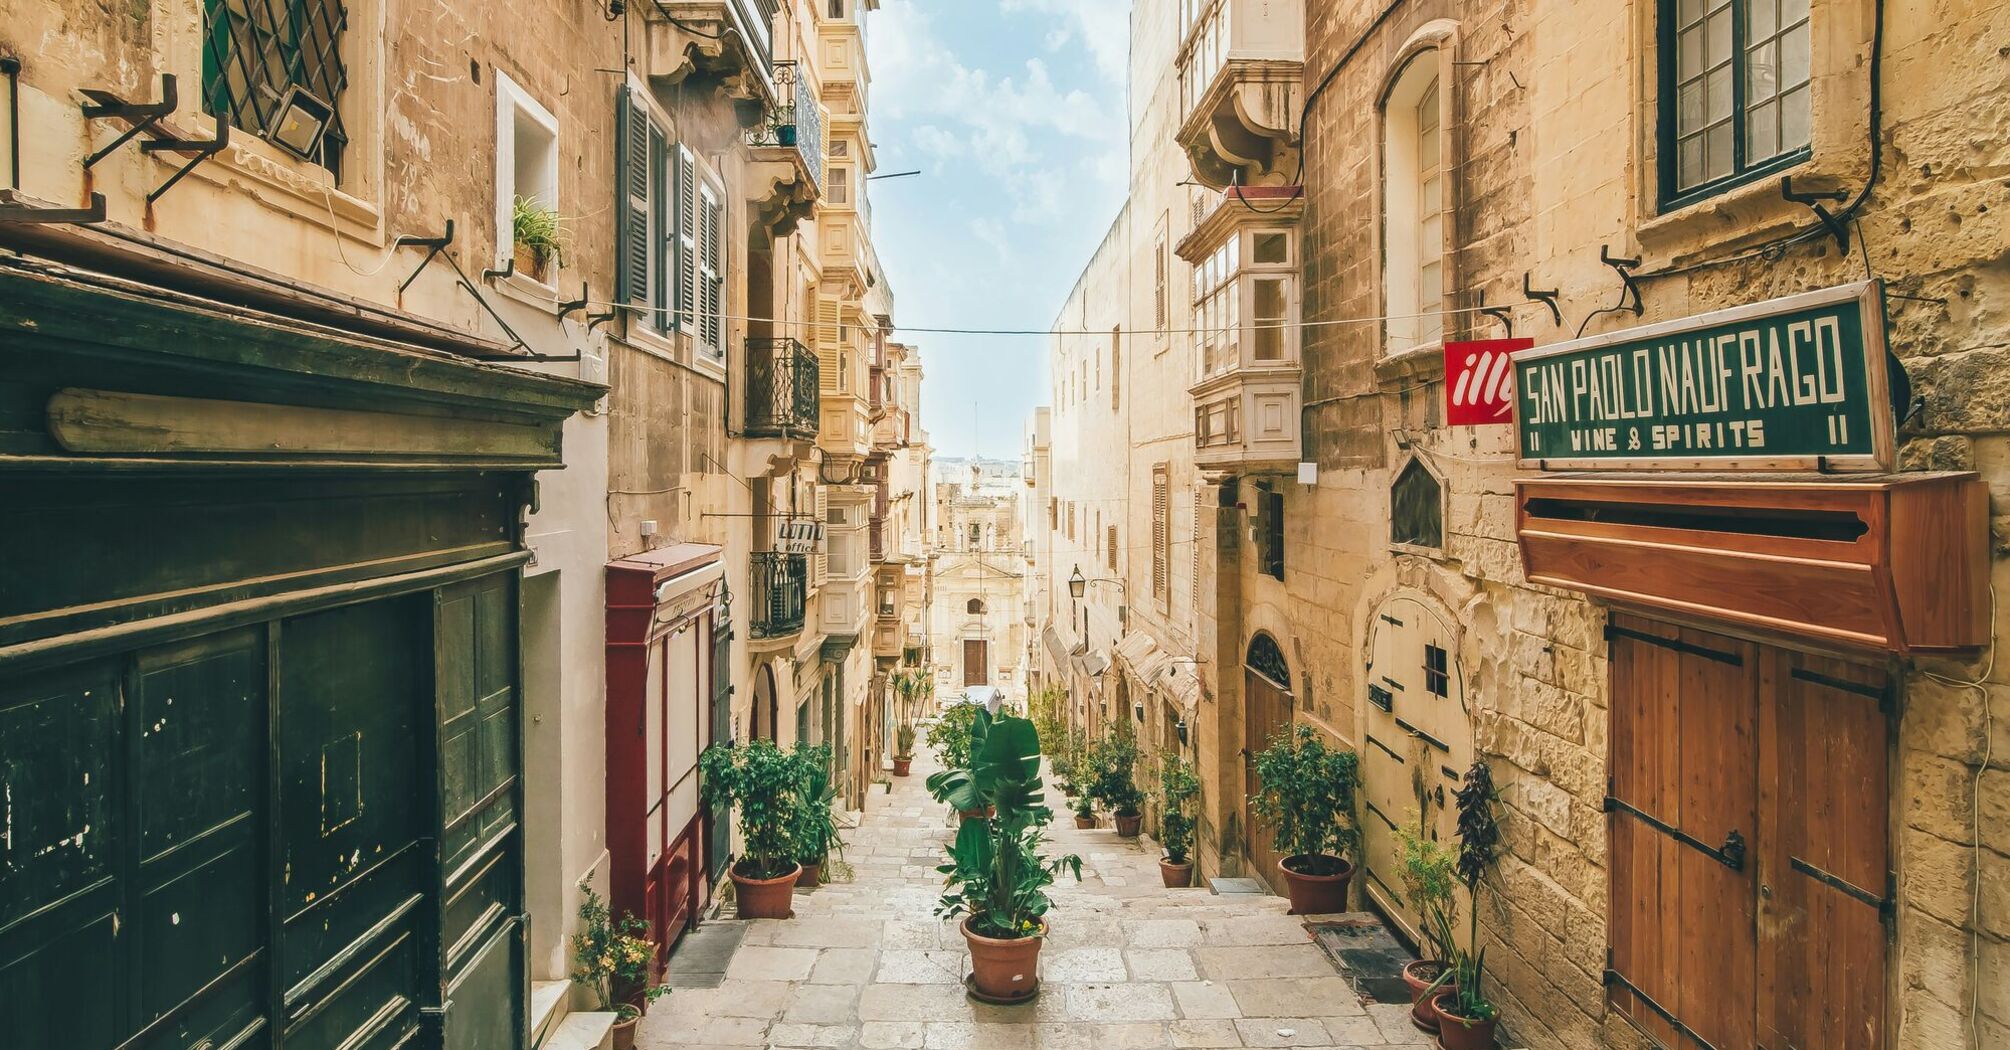 Sunday morning in Valletta